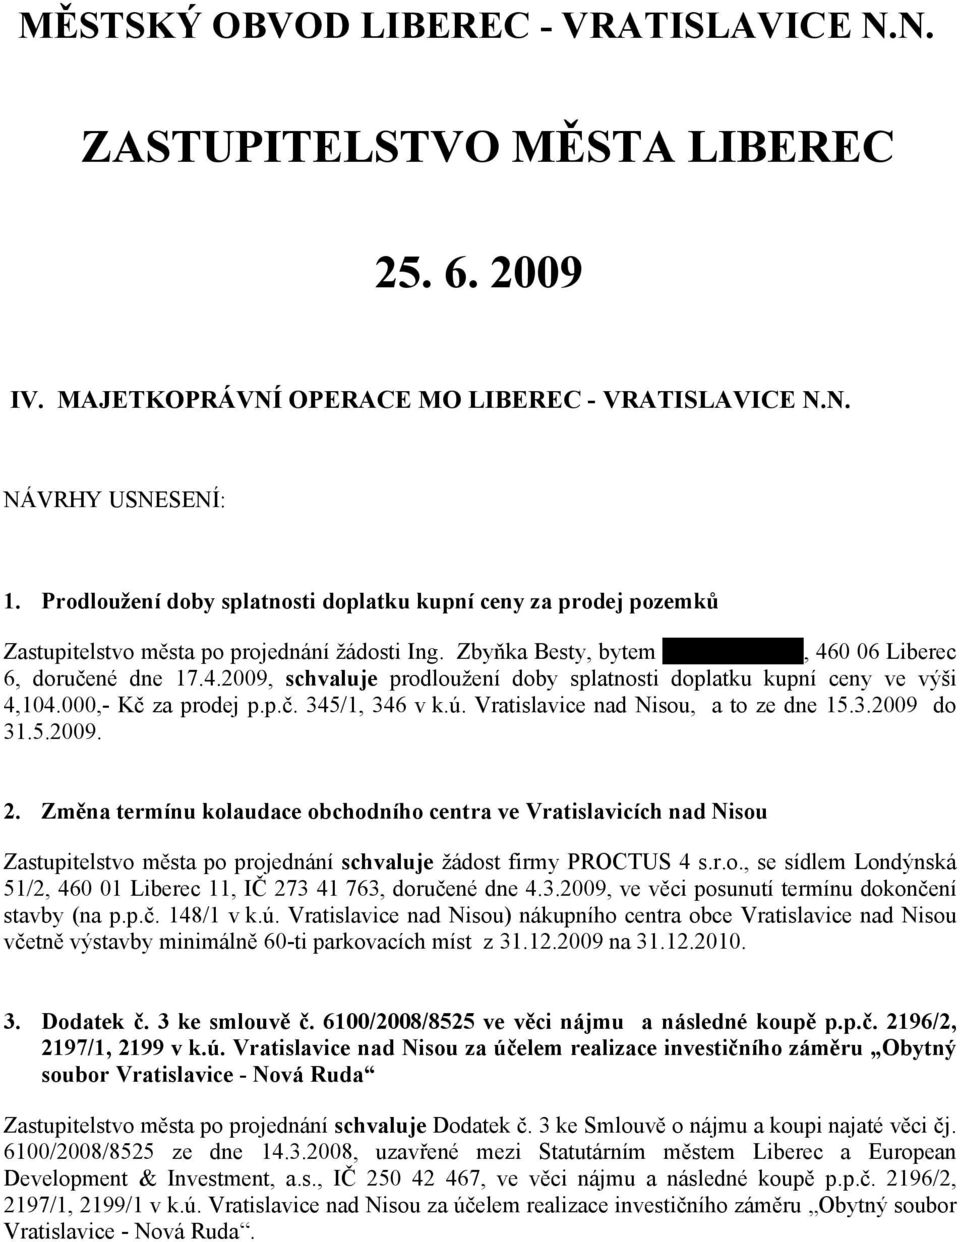 0 06 Liberec 6, doručené dne 17.4.2009, schvaluje prodloužení doby splatnosti doplatku kupní ceny ve výši 4,104.000,- Kč za prodej p.p.č. 345/1, 346 v k.ú. Vratislavice nad Nisou, a to ze dne 15.3.2009 do 31.